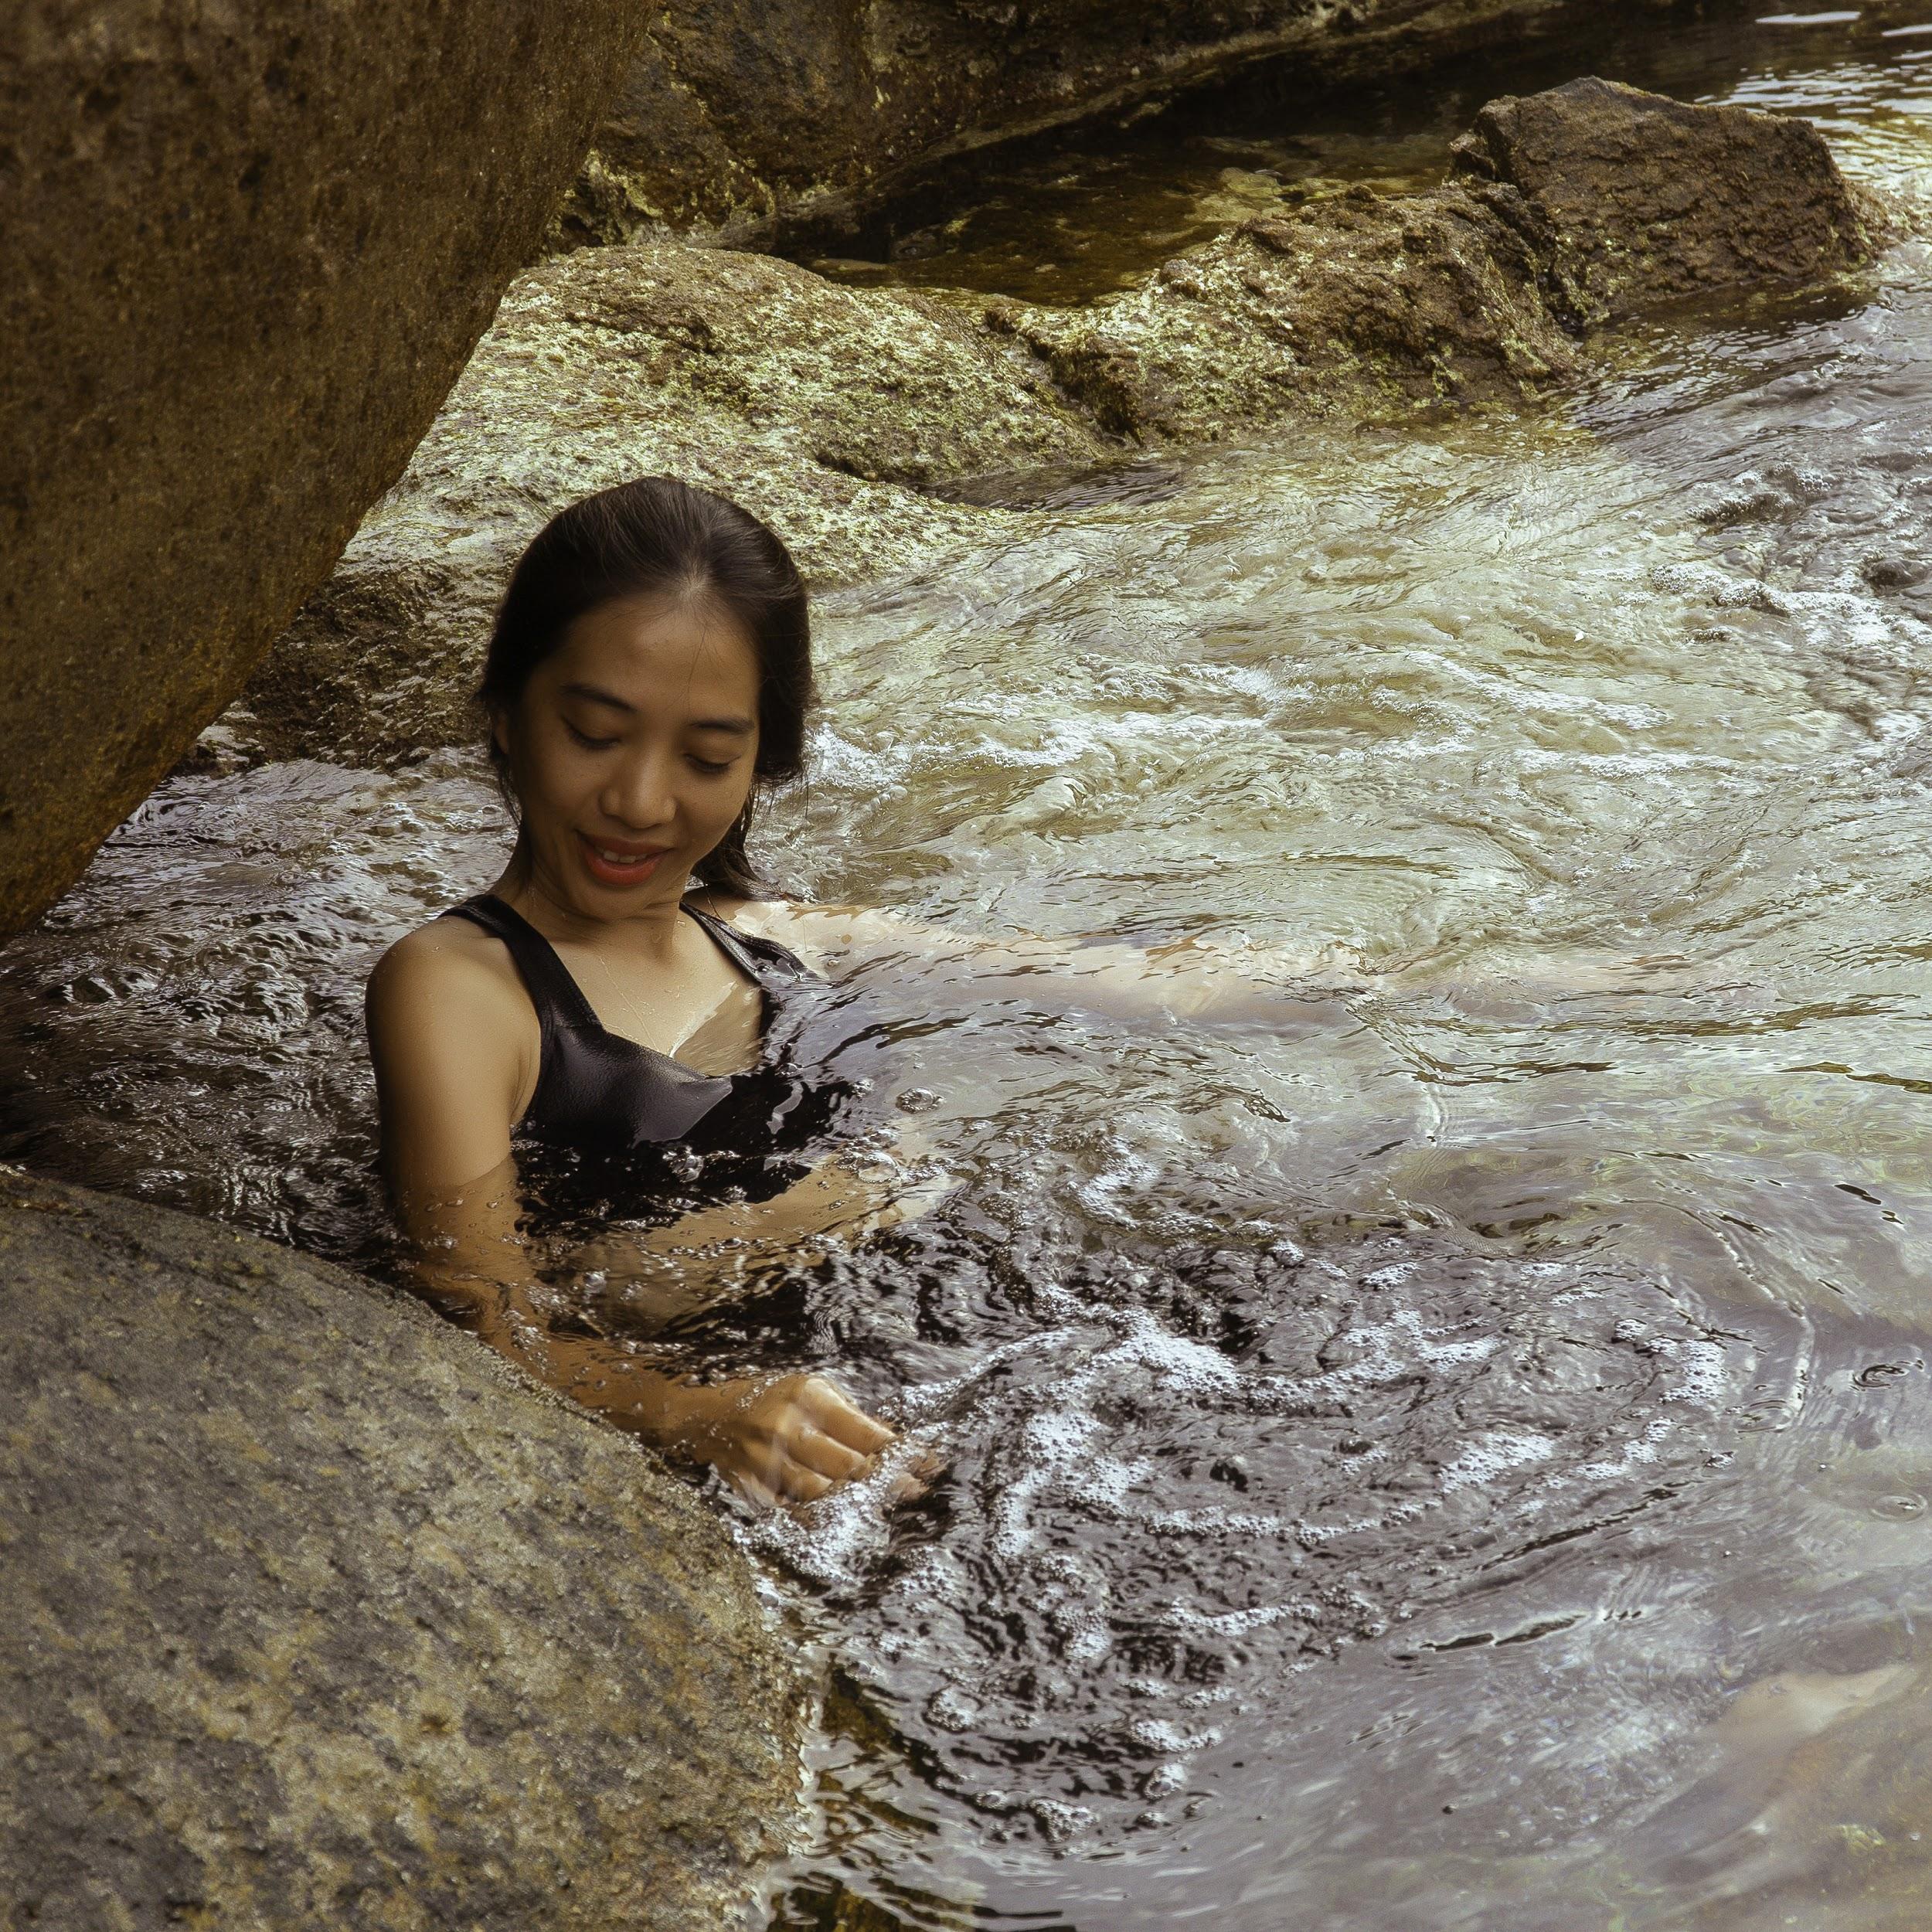 Độc lạ chuyến đi 'chữa lành' với trải nghiệm tắm rừng chỉ dành cho phụ nữ - Ảnh 3.